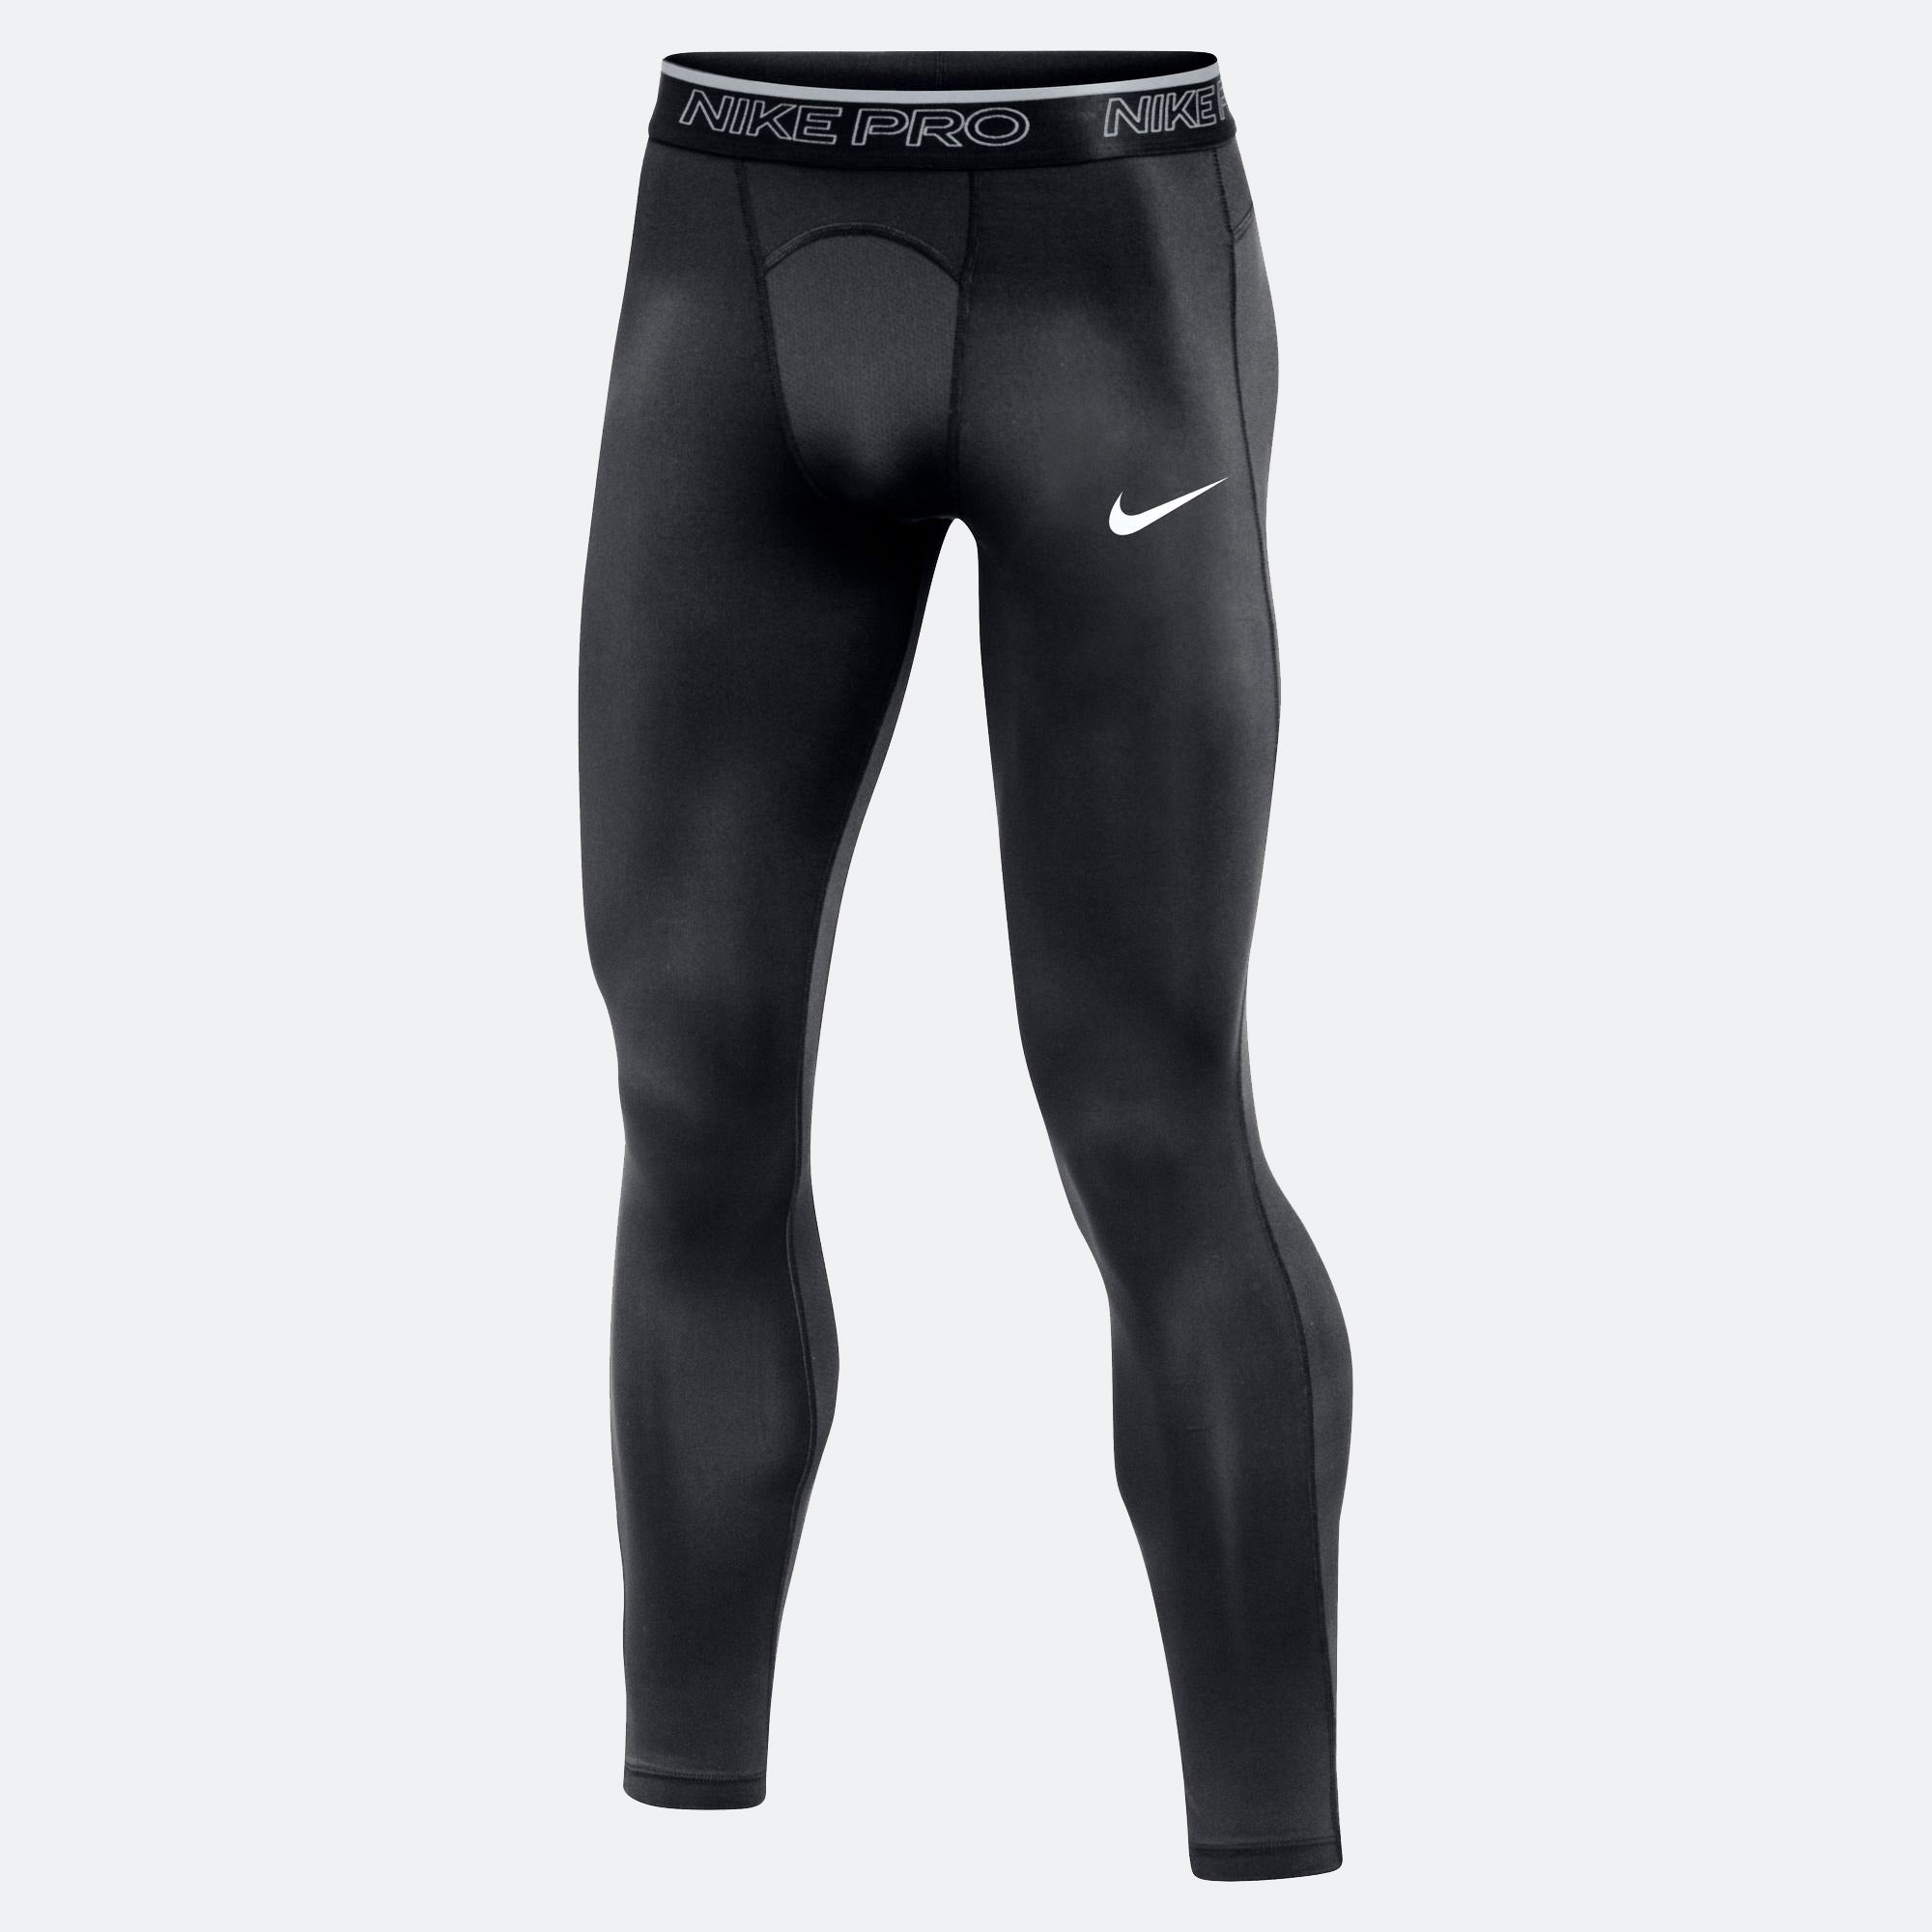 Nike Pro Training Tight Men's Black